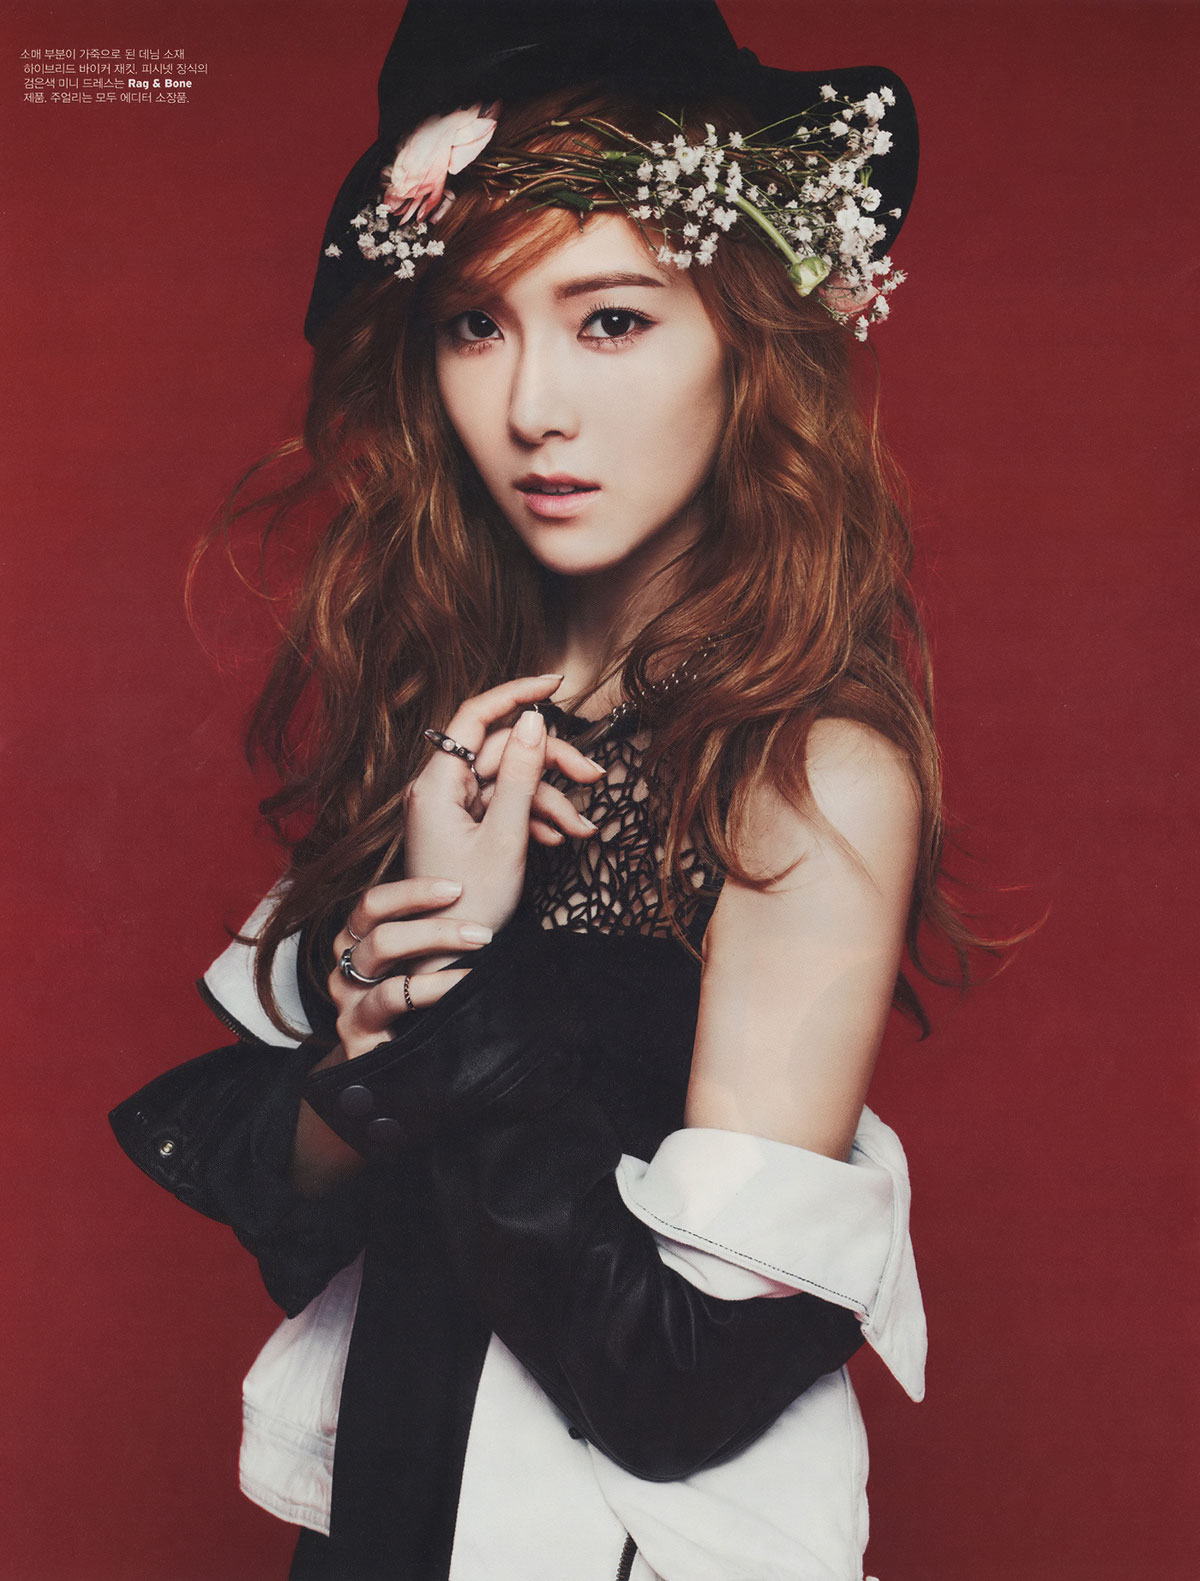 Jessica W Korea Magazine